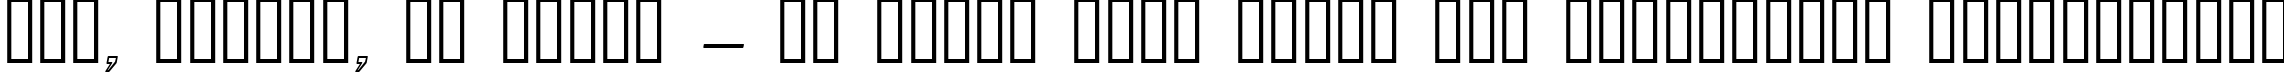 Пример написания шрифтом Pecot Outline Oblique текста на украинском